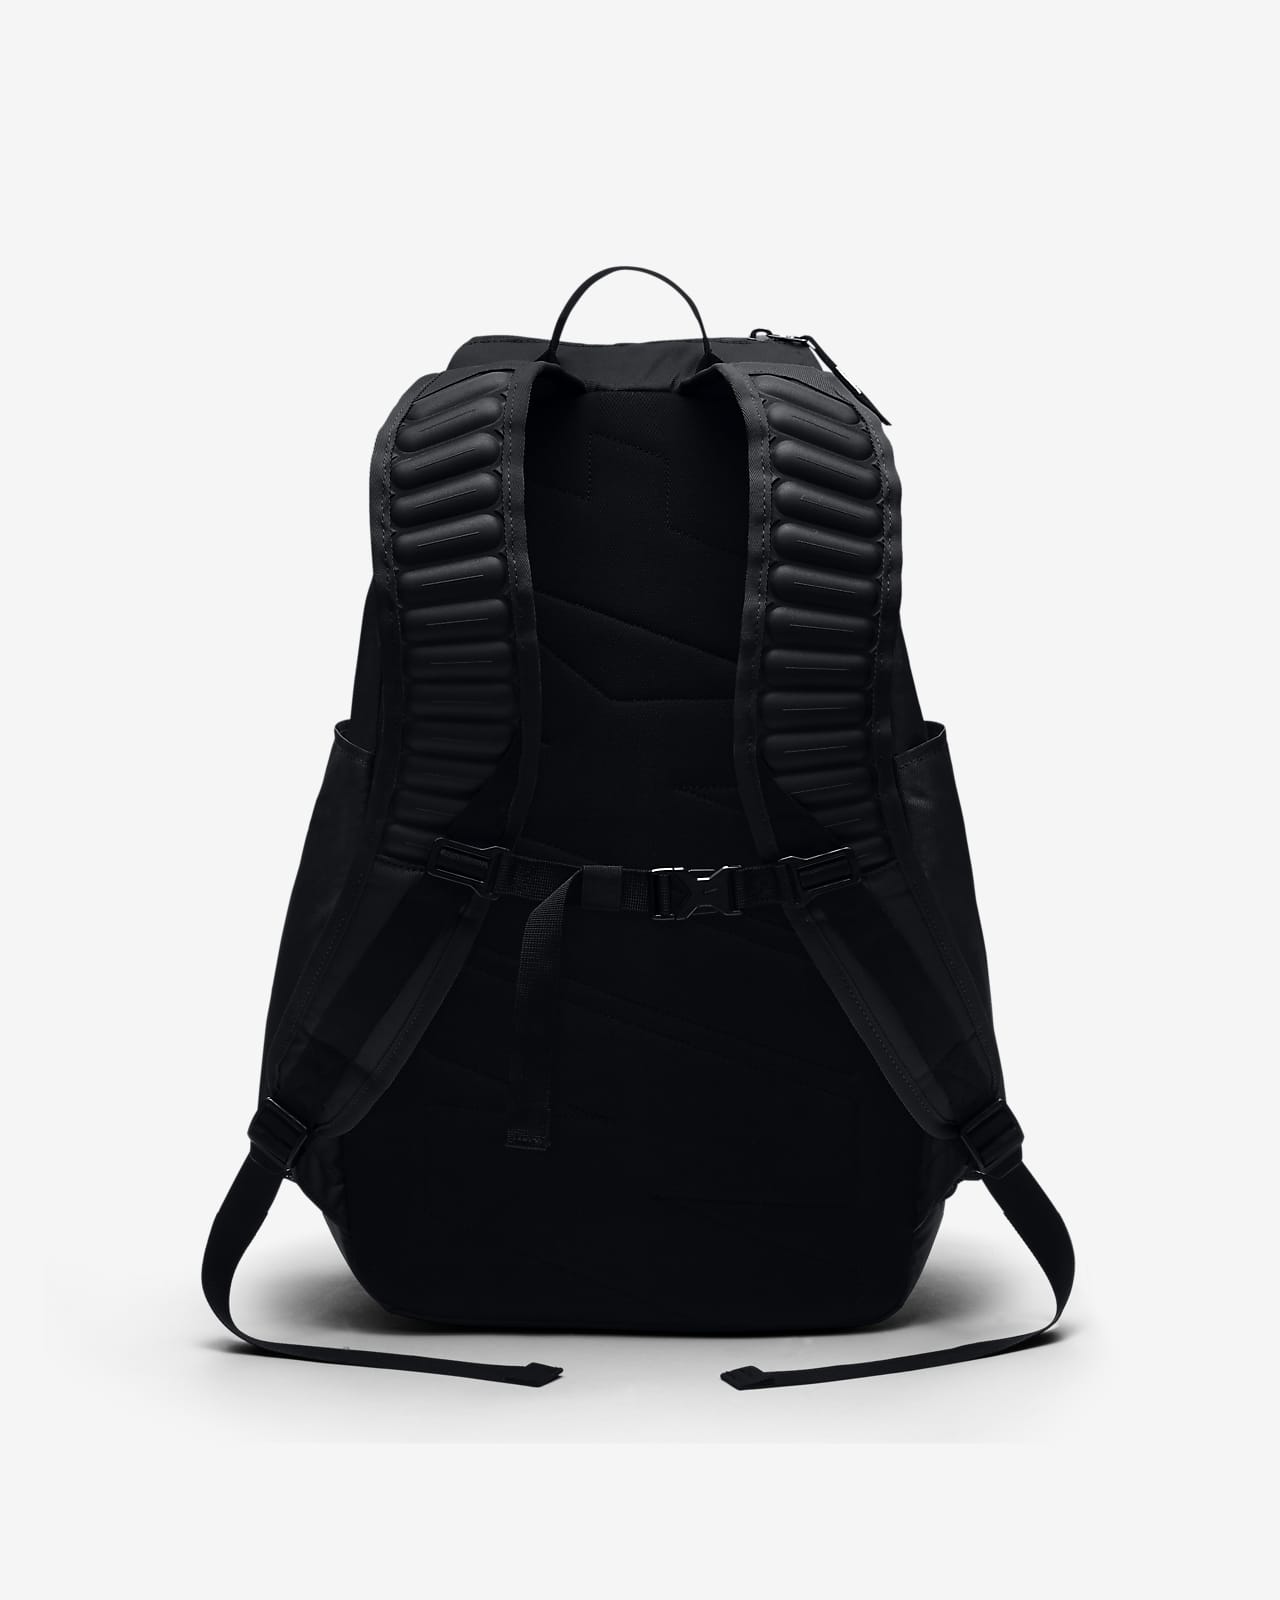 nike max air backpack 2016